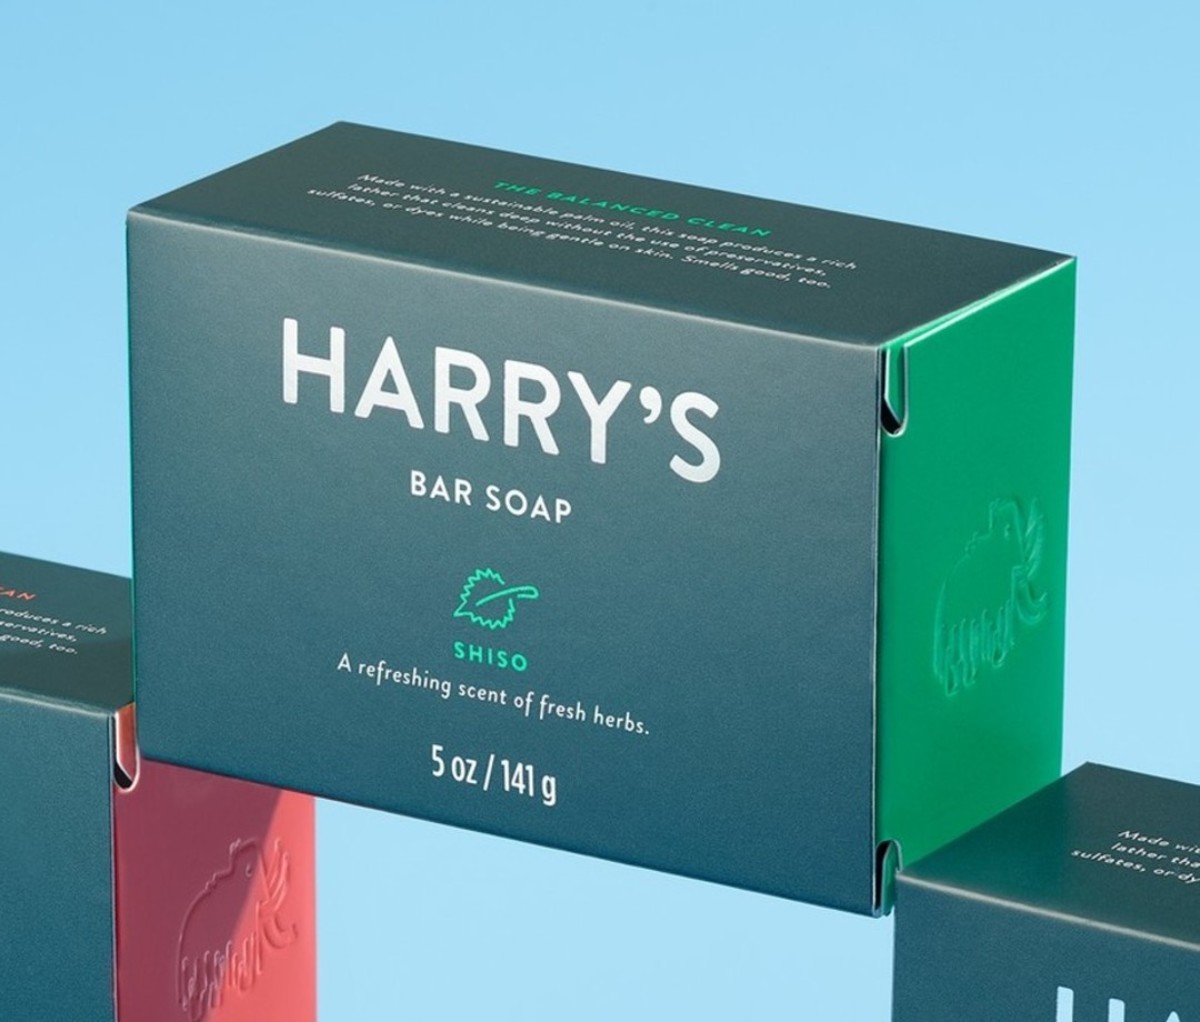 Harry's Men's Bar Soap Redwood Scent Body Bar Soap for Men 4 Bars Net WT 4 oz Each